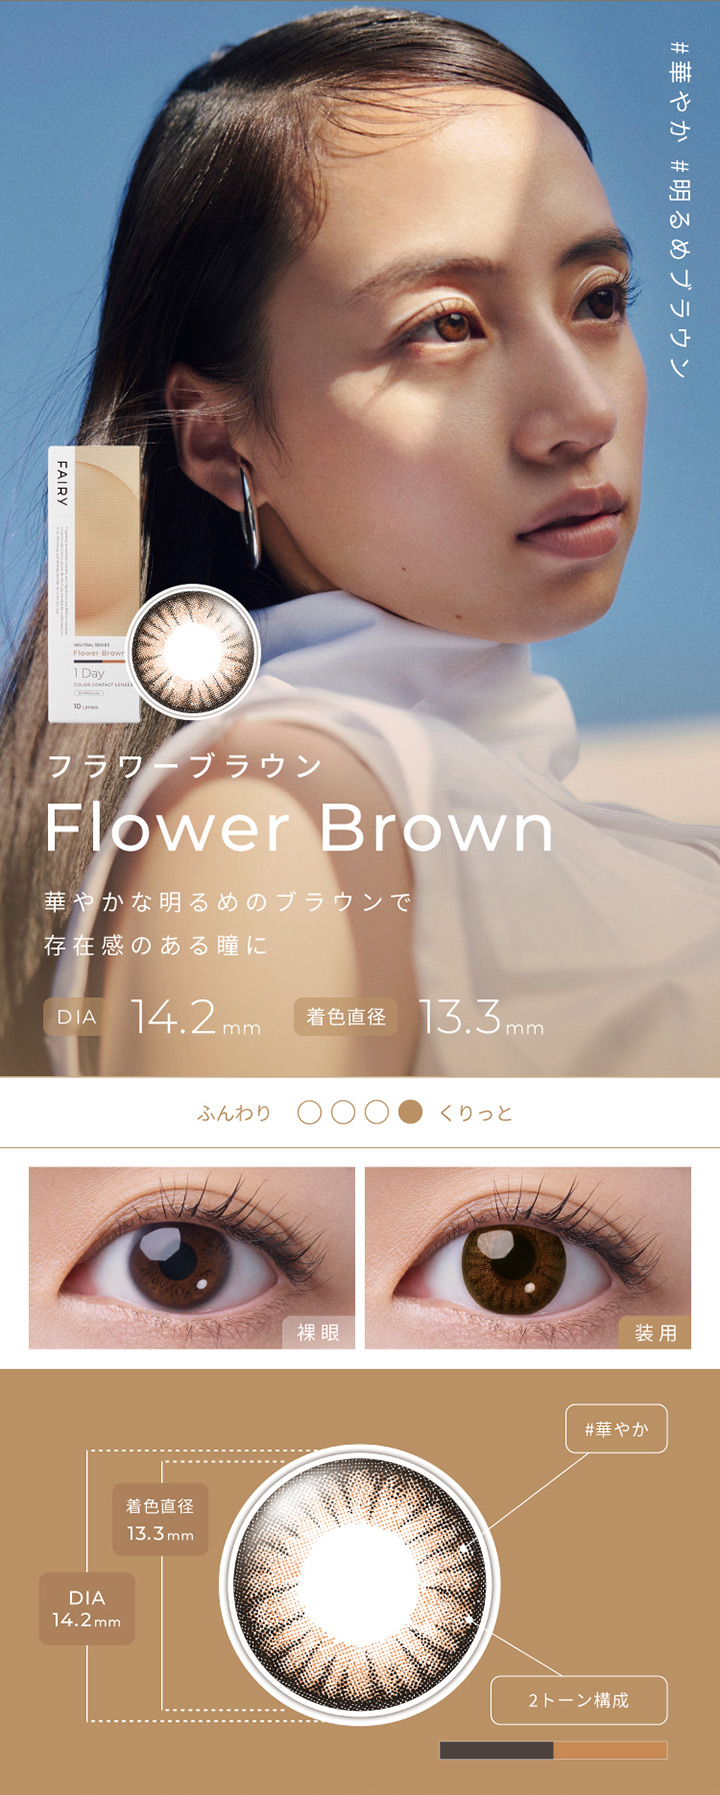 フラワーブラウン Flower Brown